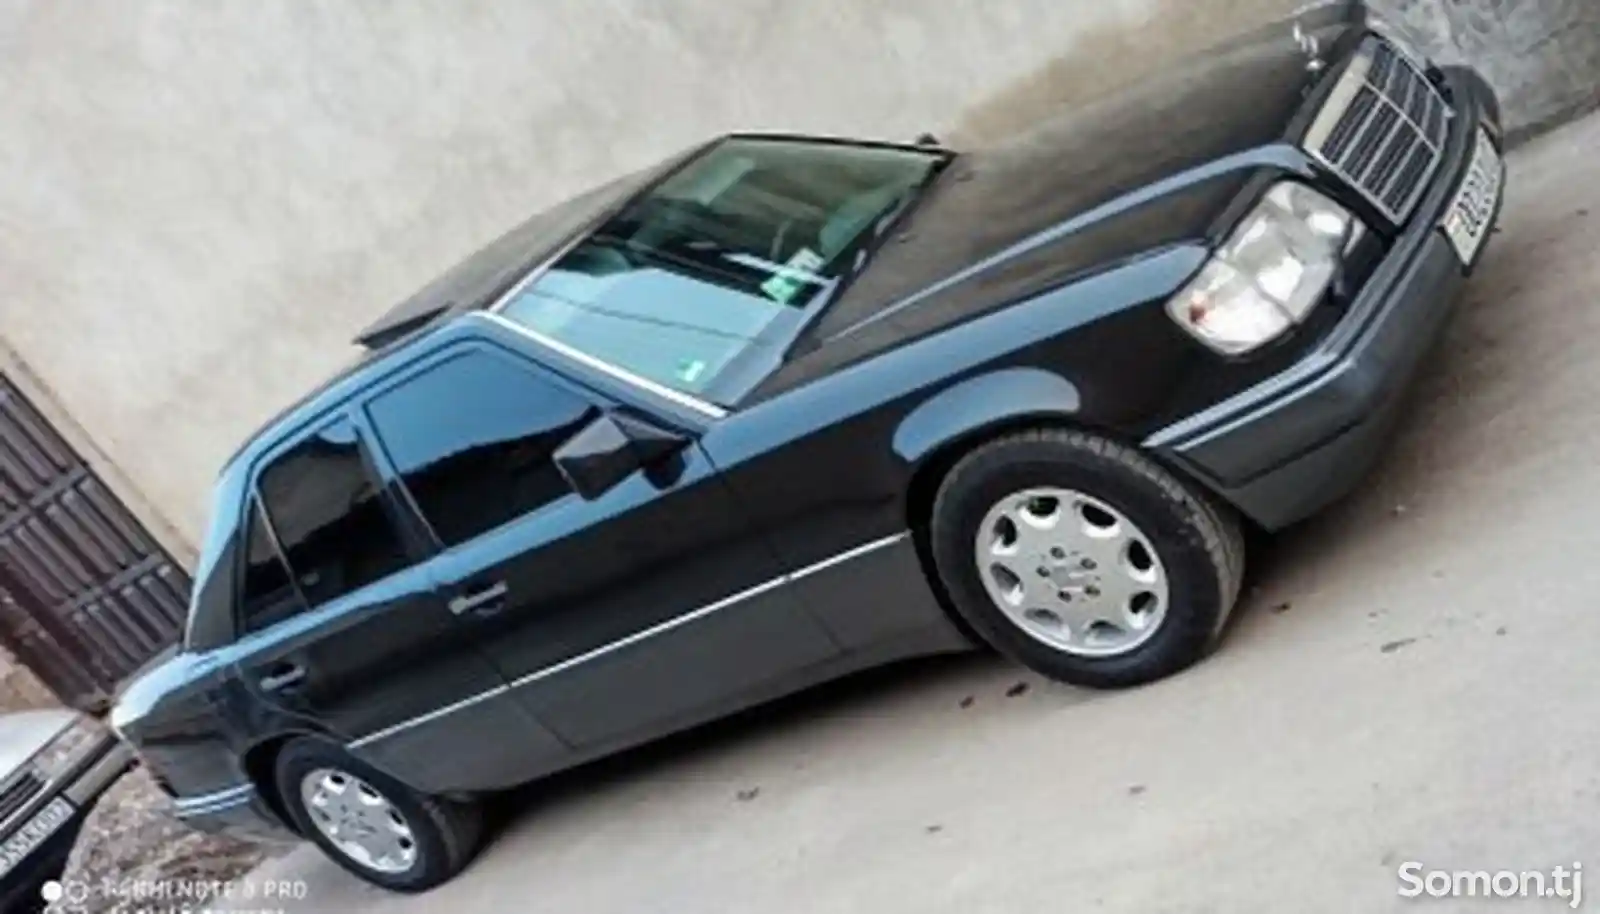 Mercedes-Benz E class, 1994-2